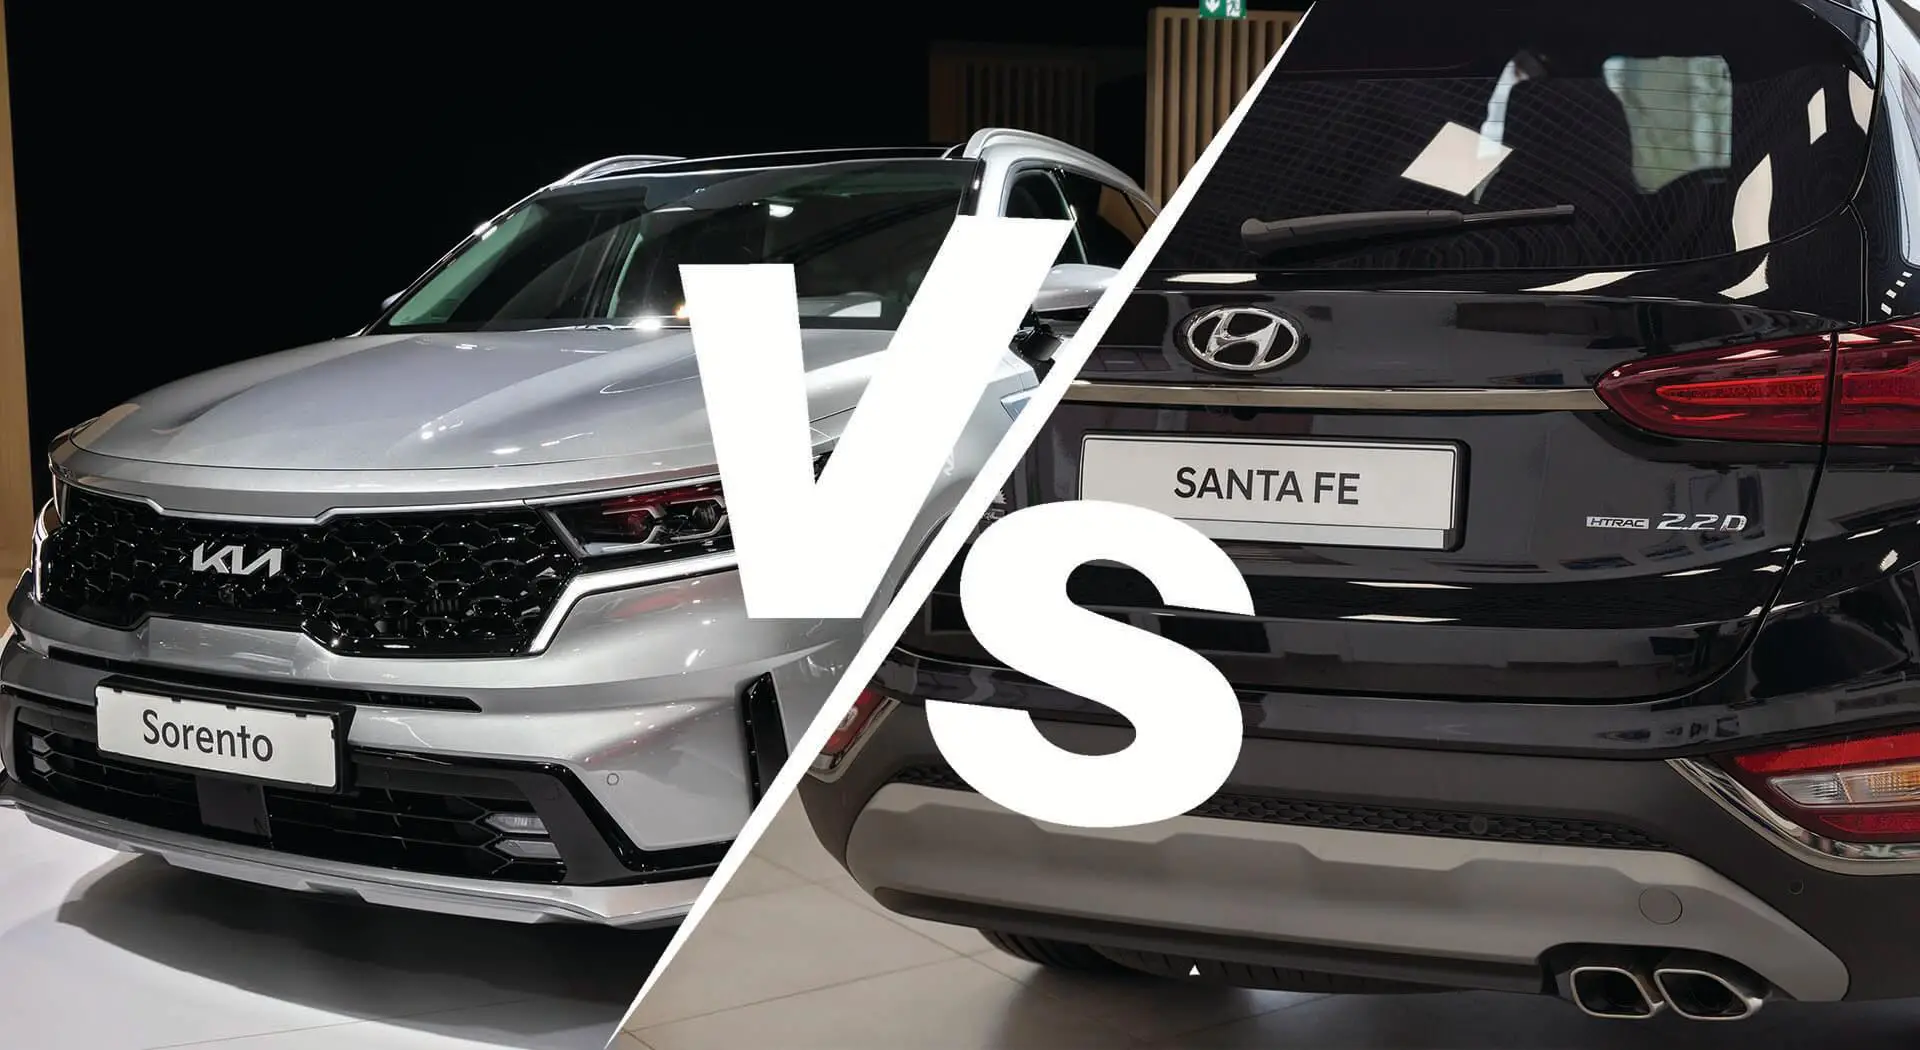 Kia Sorento vs. Hyundai Santa Fe